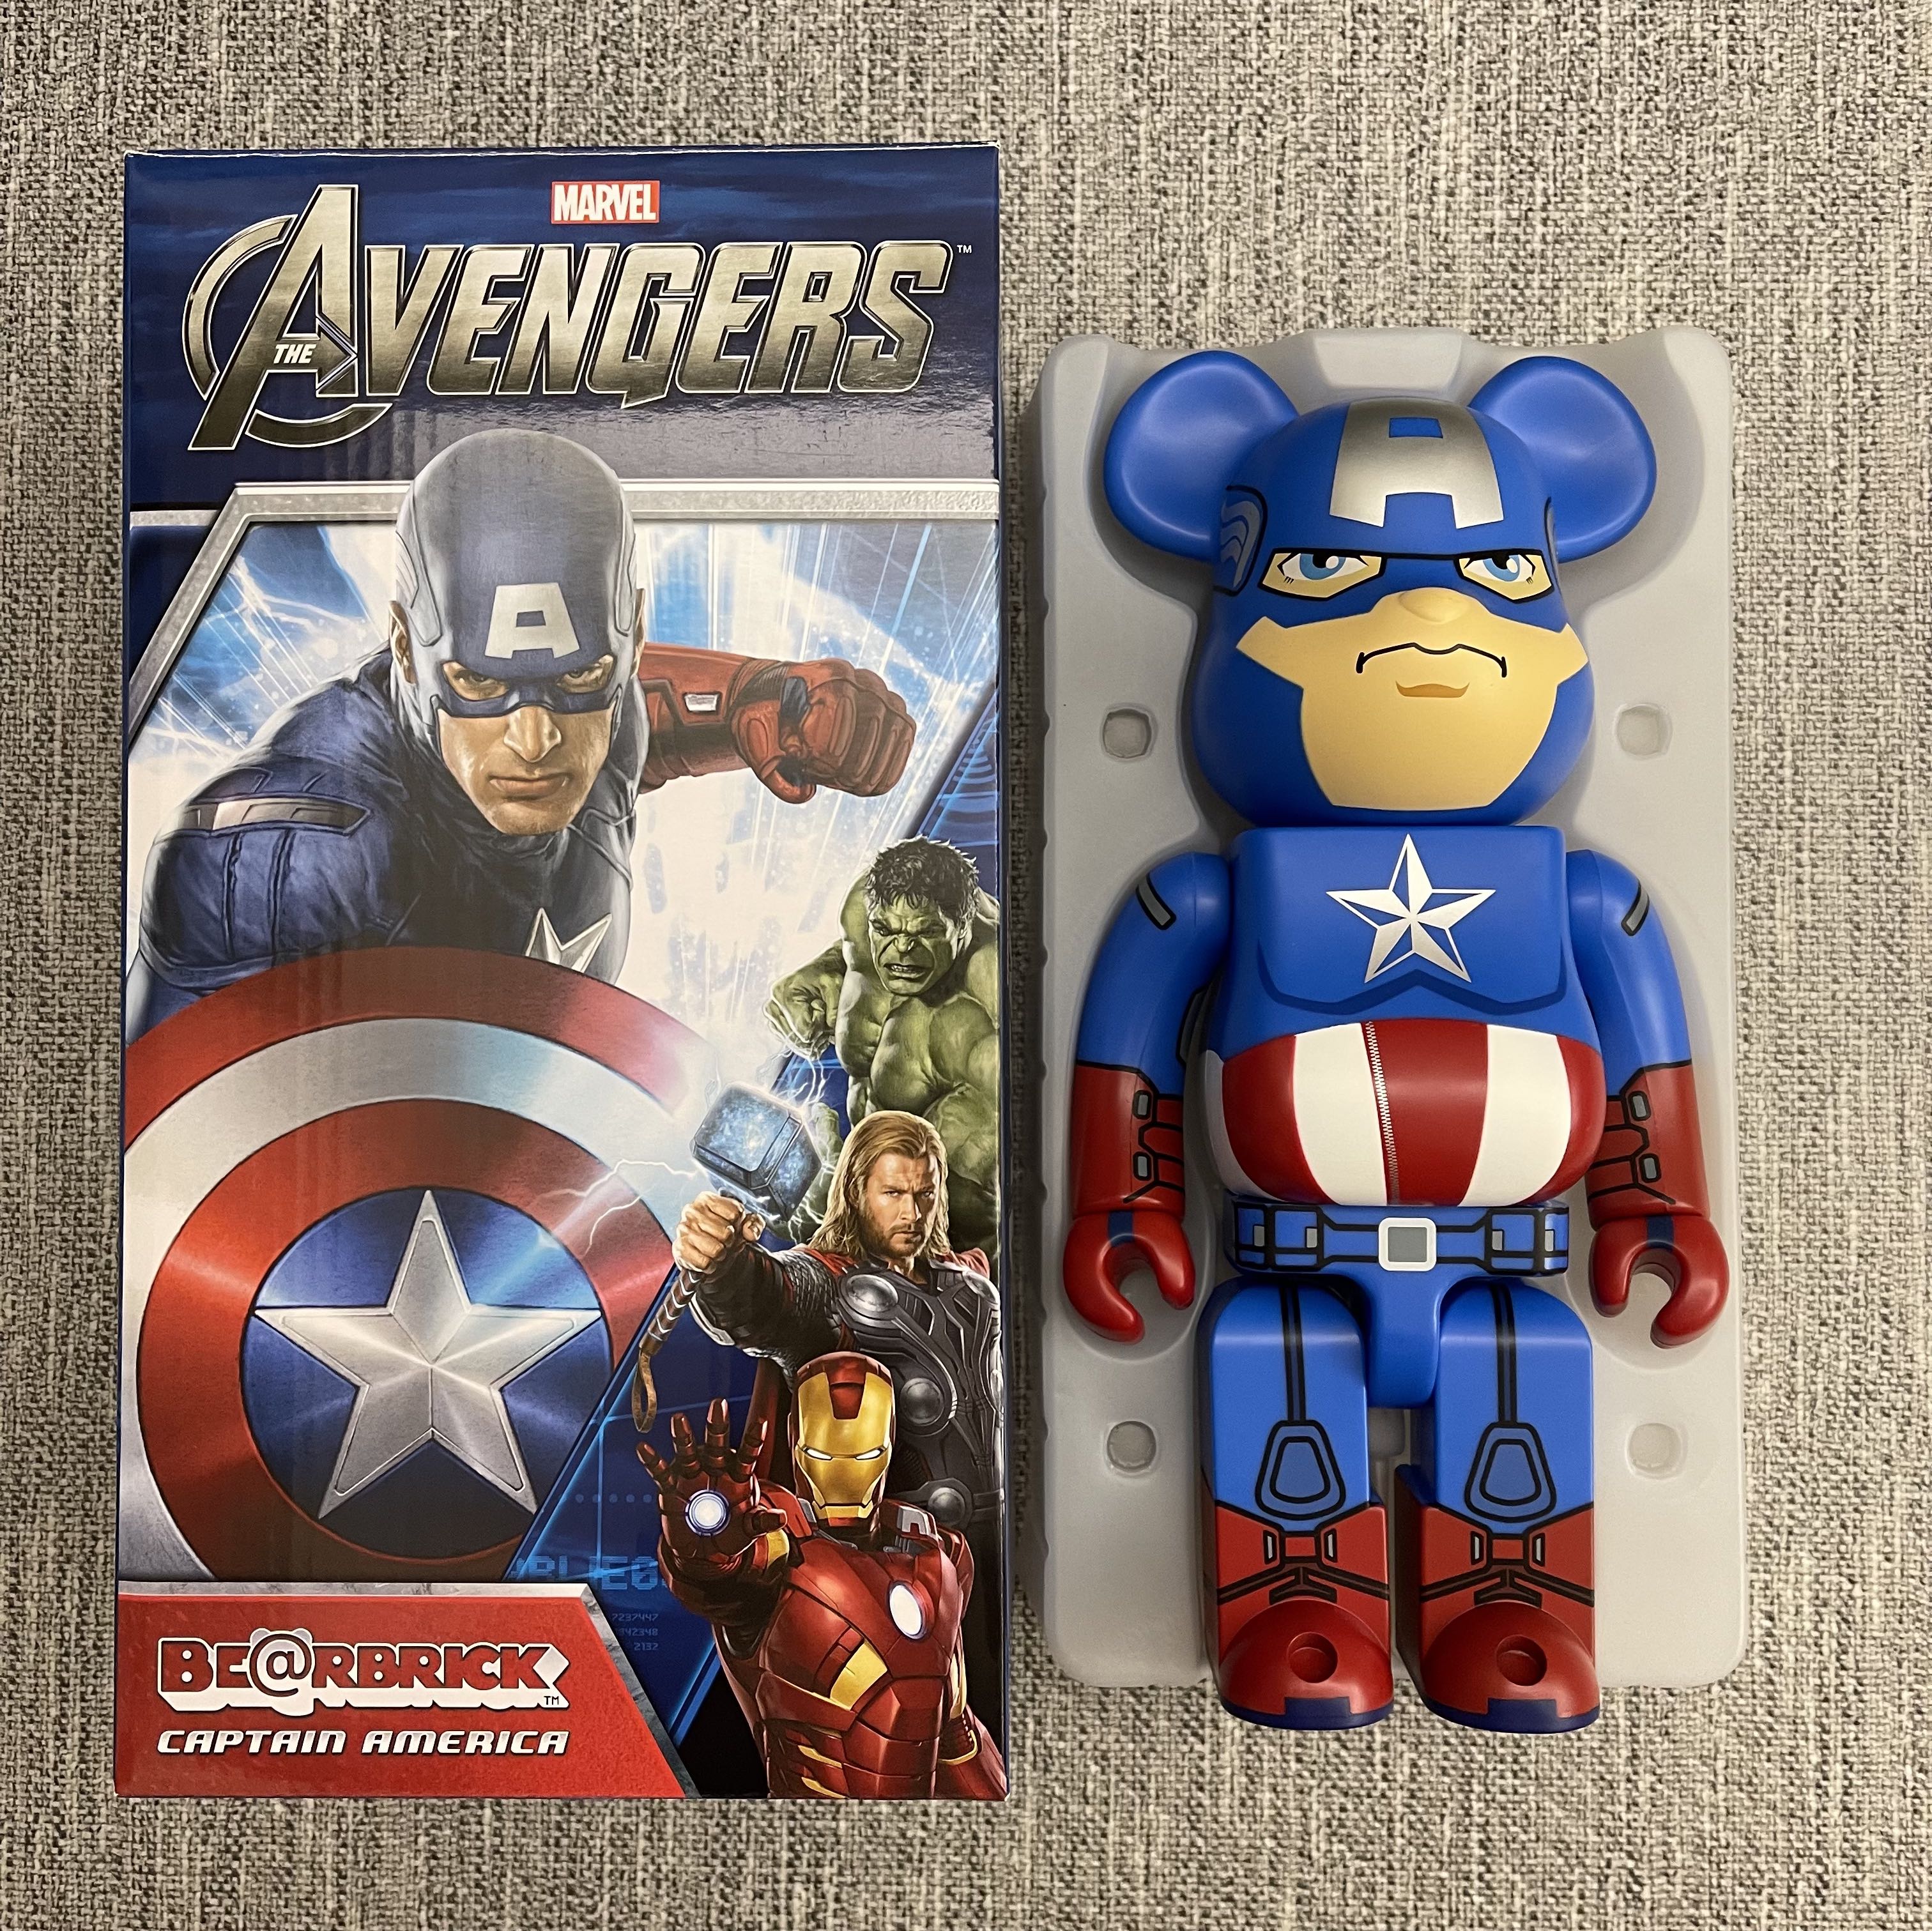 Bearbrick 400% Captain America Avengers 美國隊長(not ironman 